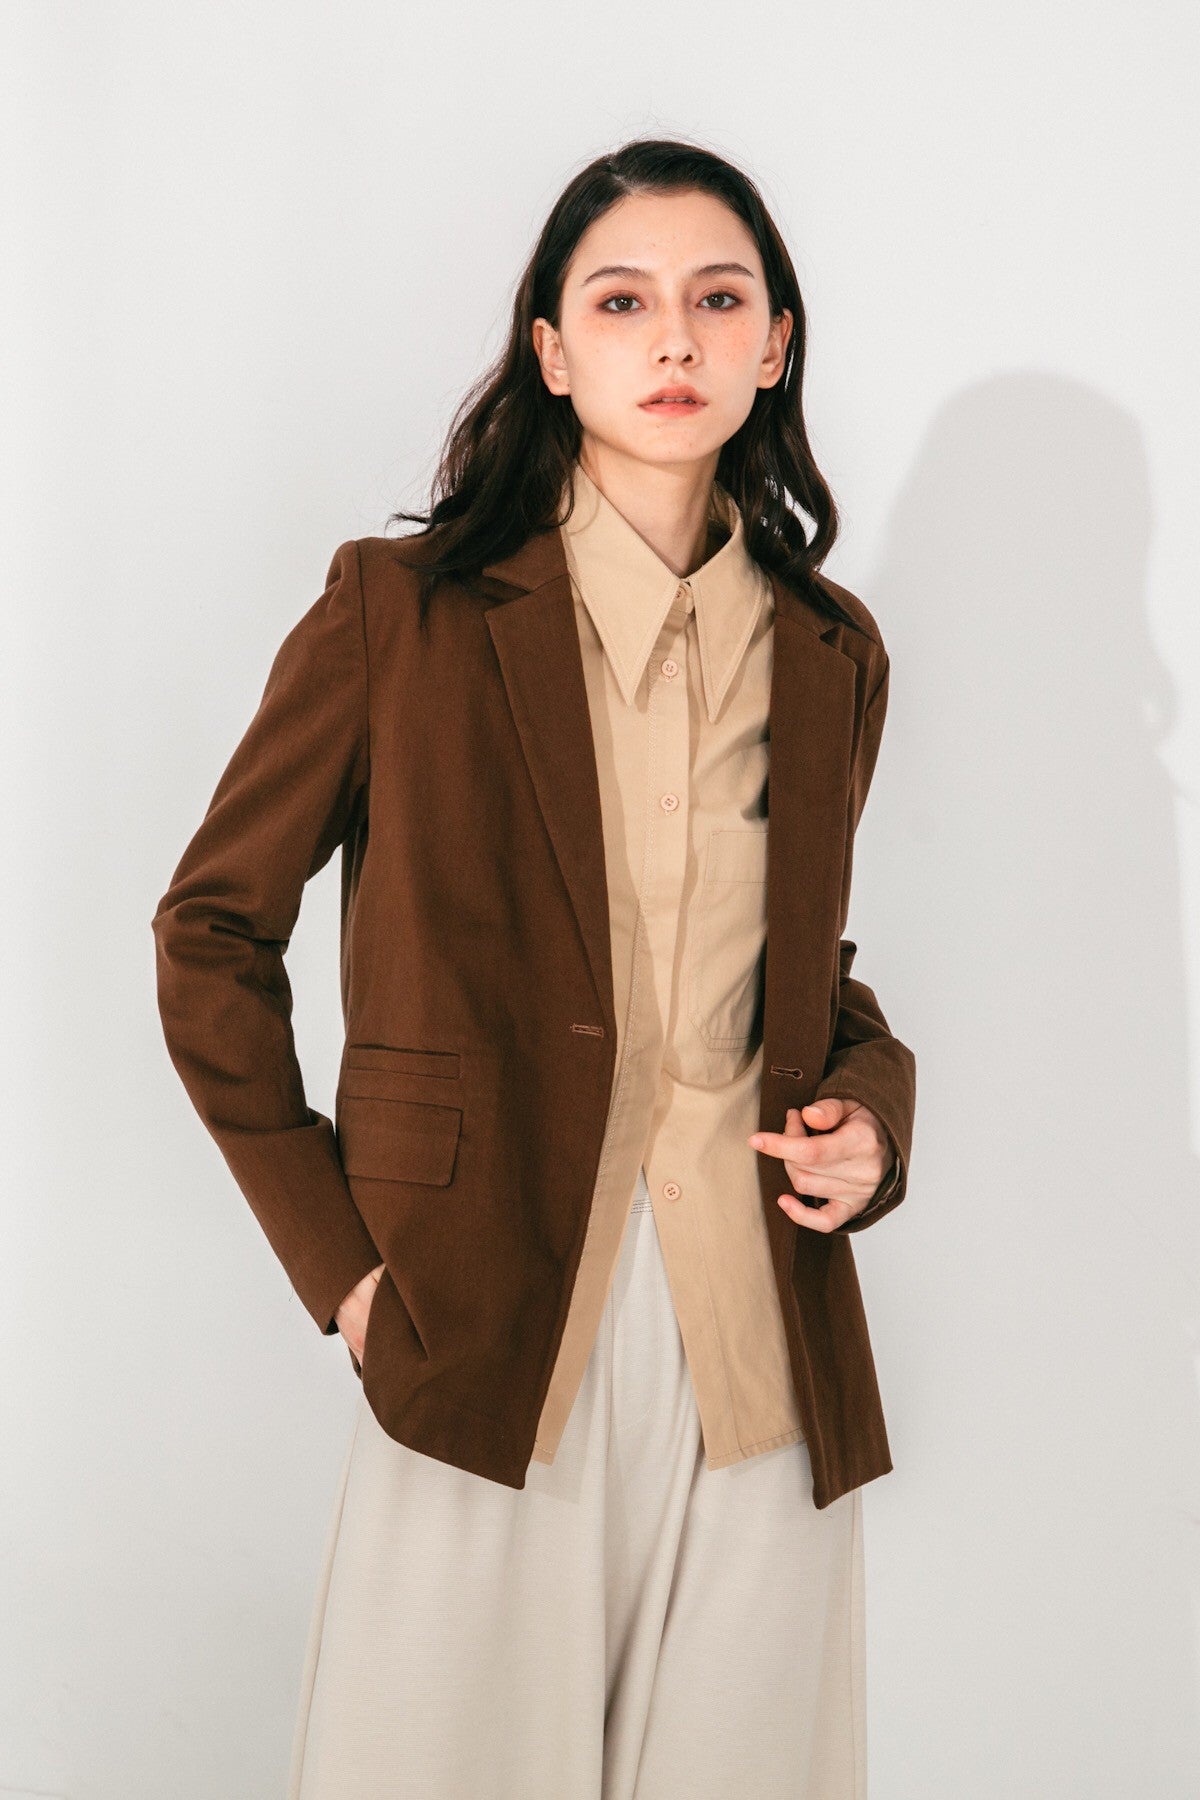 SKYE San Francisco SF shop ethical modern minimalist quality women clothing fashion Audrey Shirt beige 5